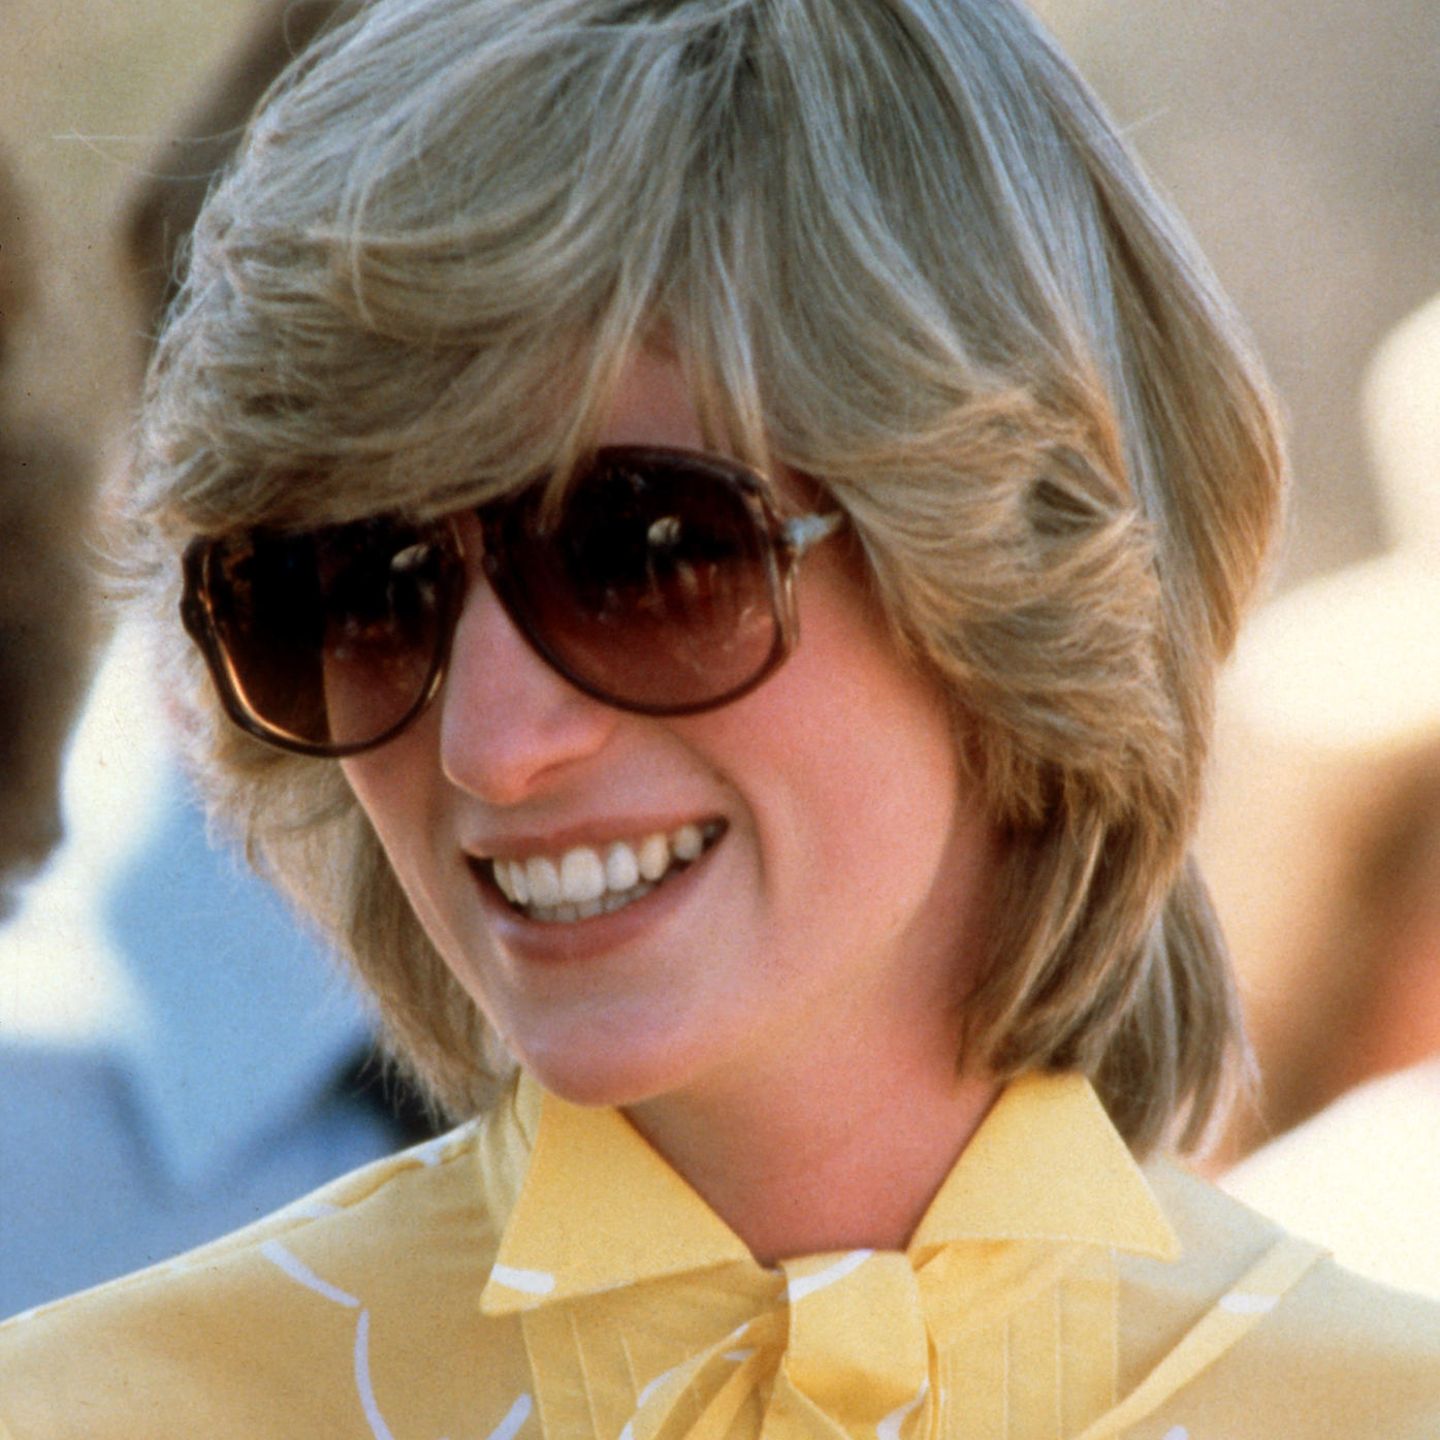 XXL-Shades in Brauntönen – Prinzessin Diana gilt bis heute als Stilikone auch in Sachen Sonnenschutz. Beim Besuch der Alice Springs School of the Air im März 1983 trägt sie ein Modell, das zwar einen Großteil ihres Gesichts verdeckt, ihr aber super coole Hippie-Vibes verleiht.